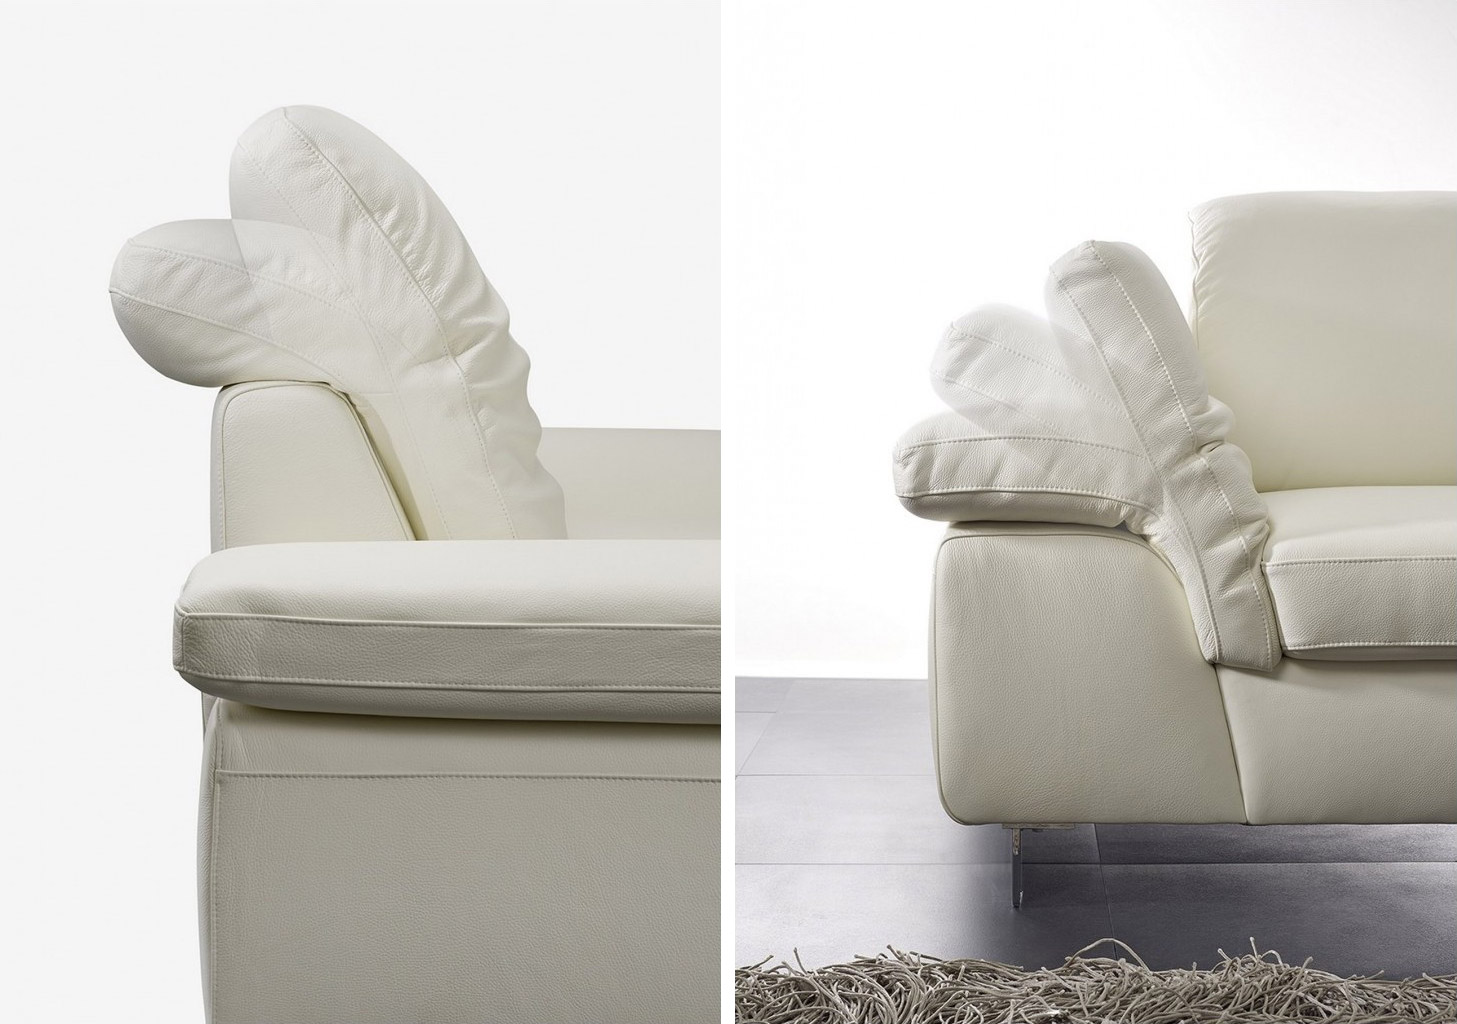 Sofa Twenty: folding backs and armrests